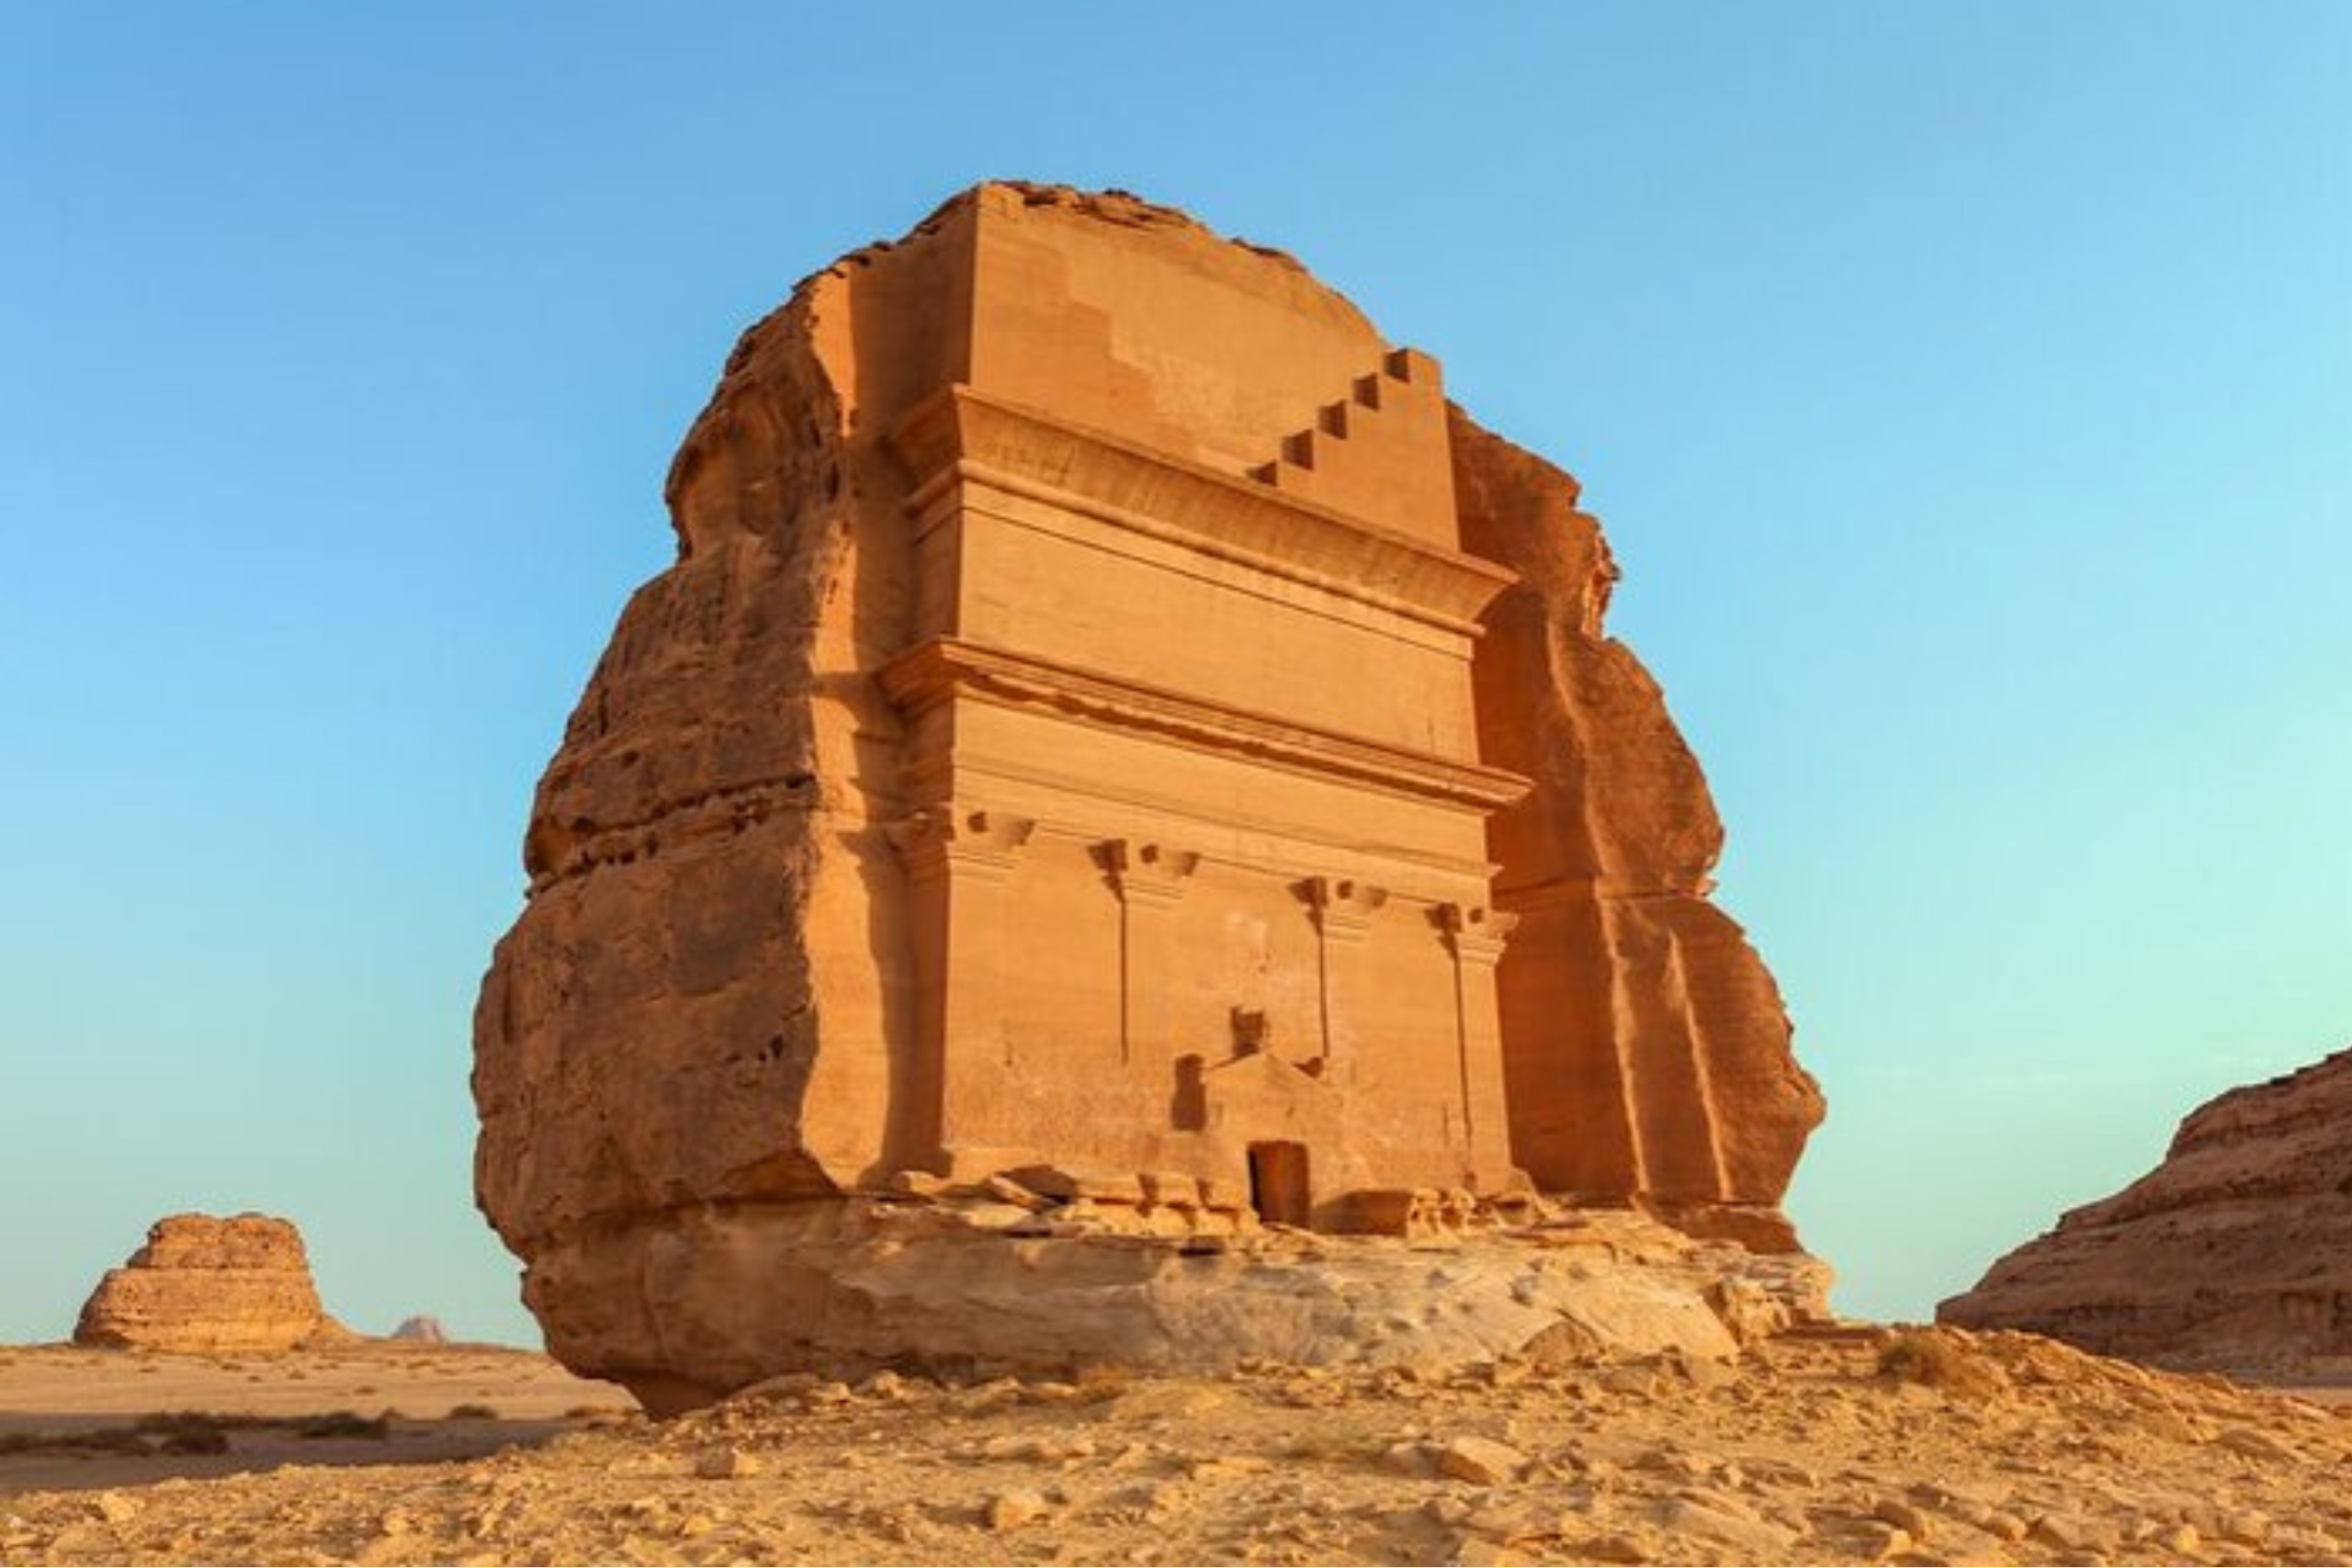 Explorez les ruines de Madain Saleh en Arabie saoudite